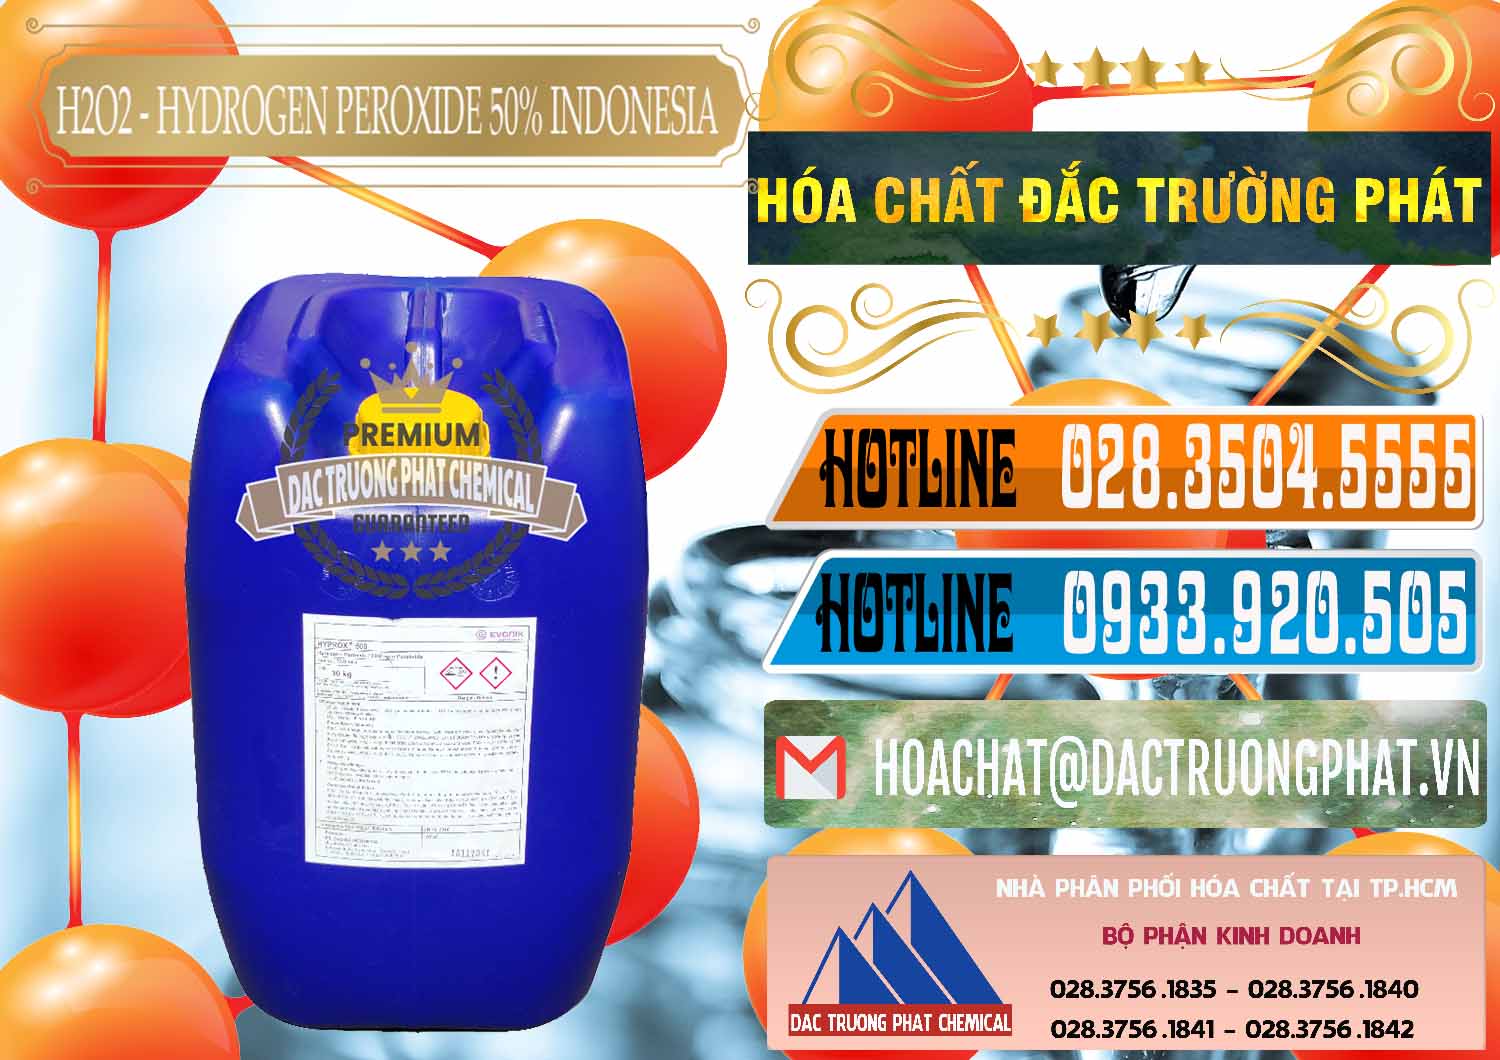 Cty chuyên bán & cung ứng H2O2 - Hydrogen Peroxide 50% Evonik Indonesia - 0070 - Chuyên kinh doanh ( cung cấp ) hóa chất tại TP.HCM - stmp.net